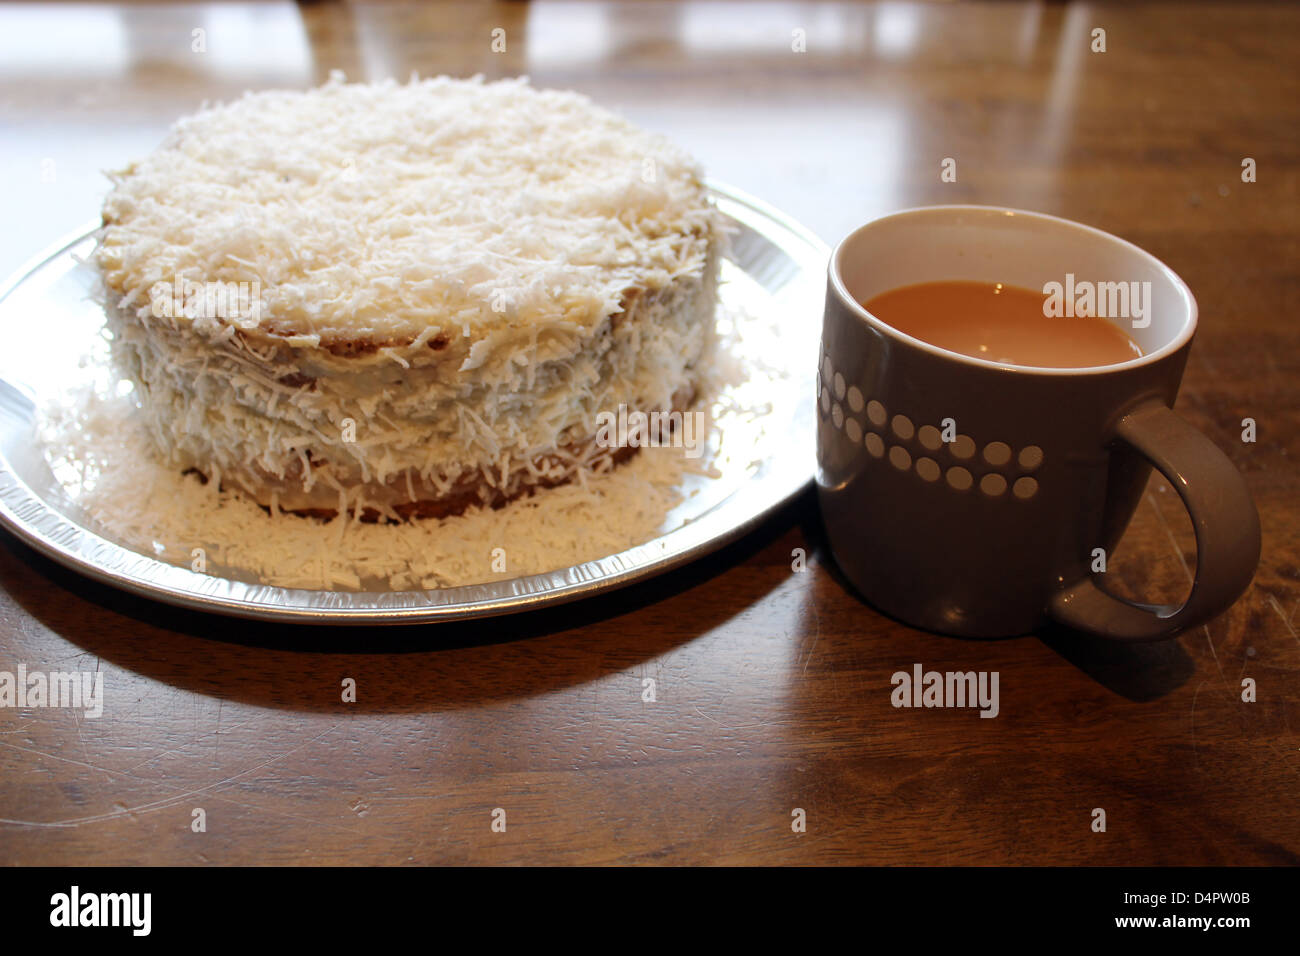 tea and cake Stock Photo